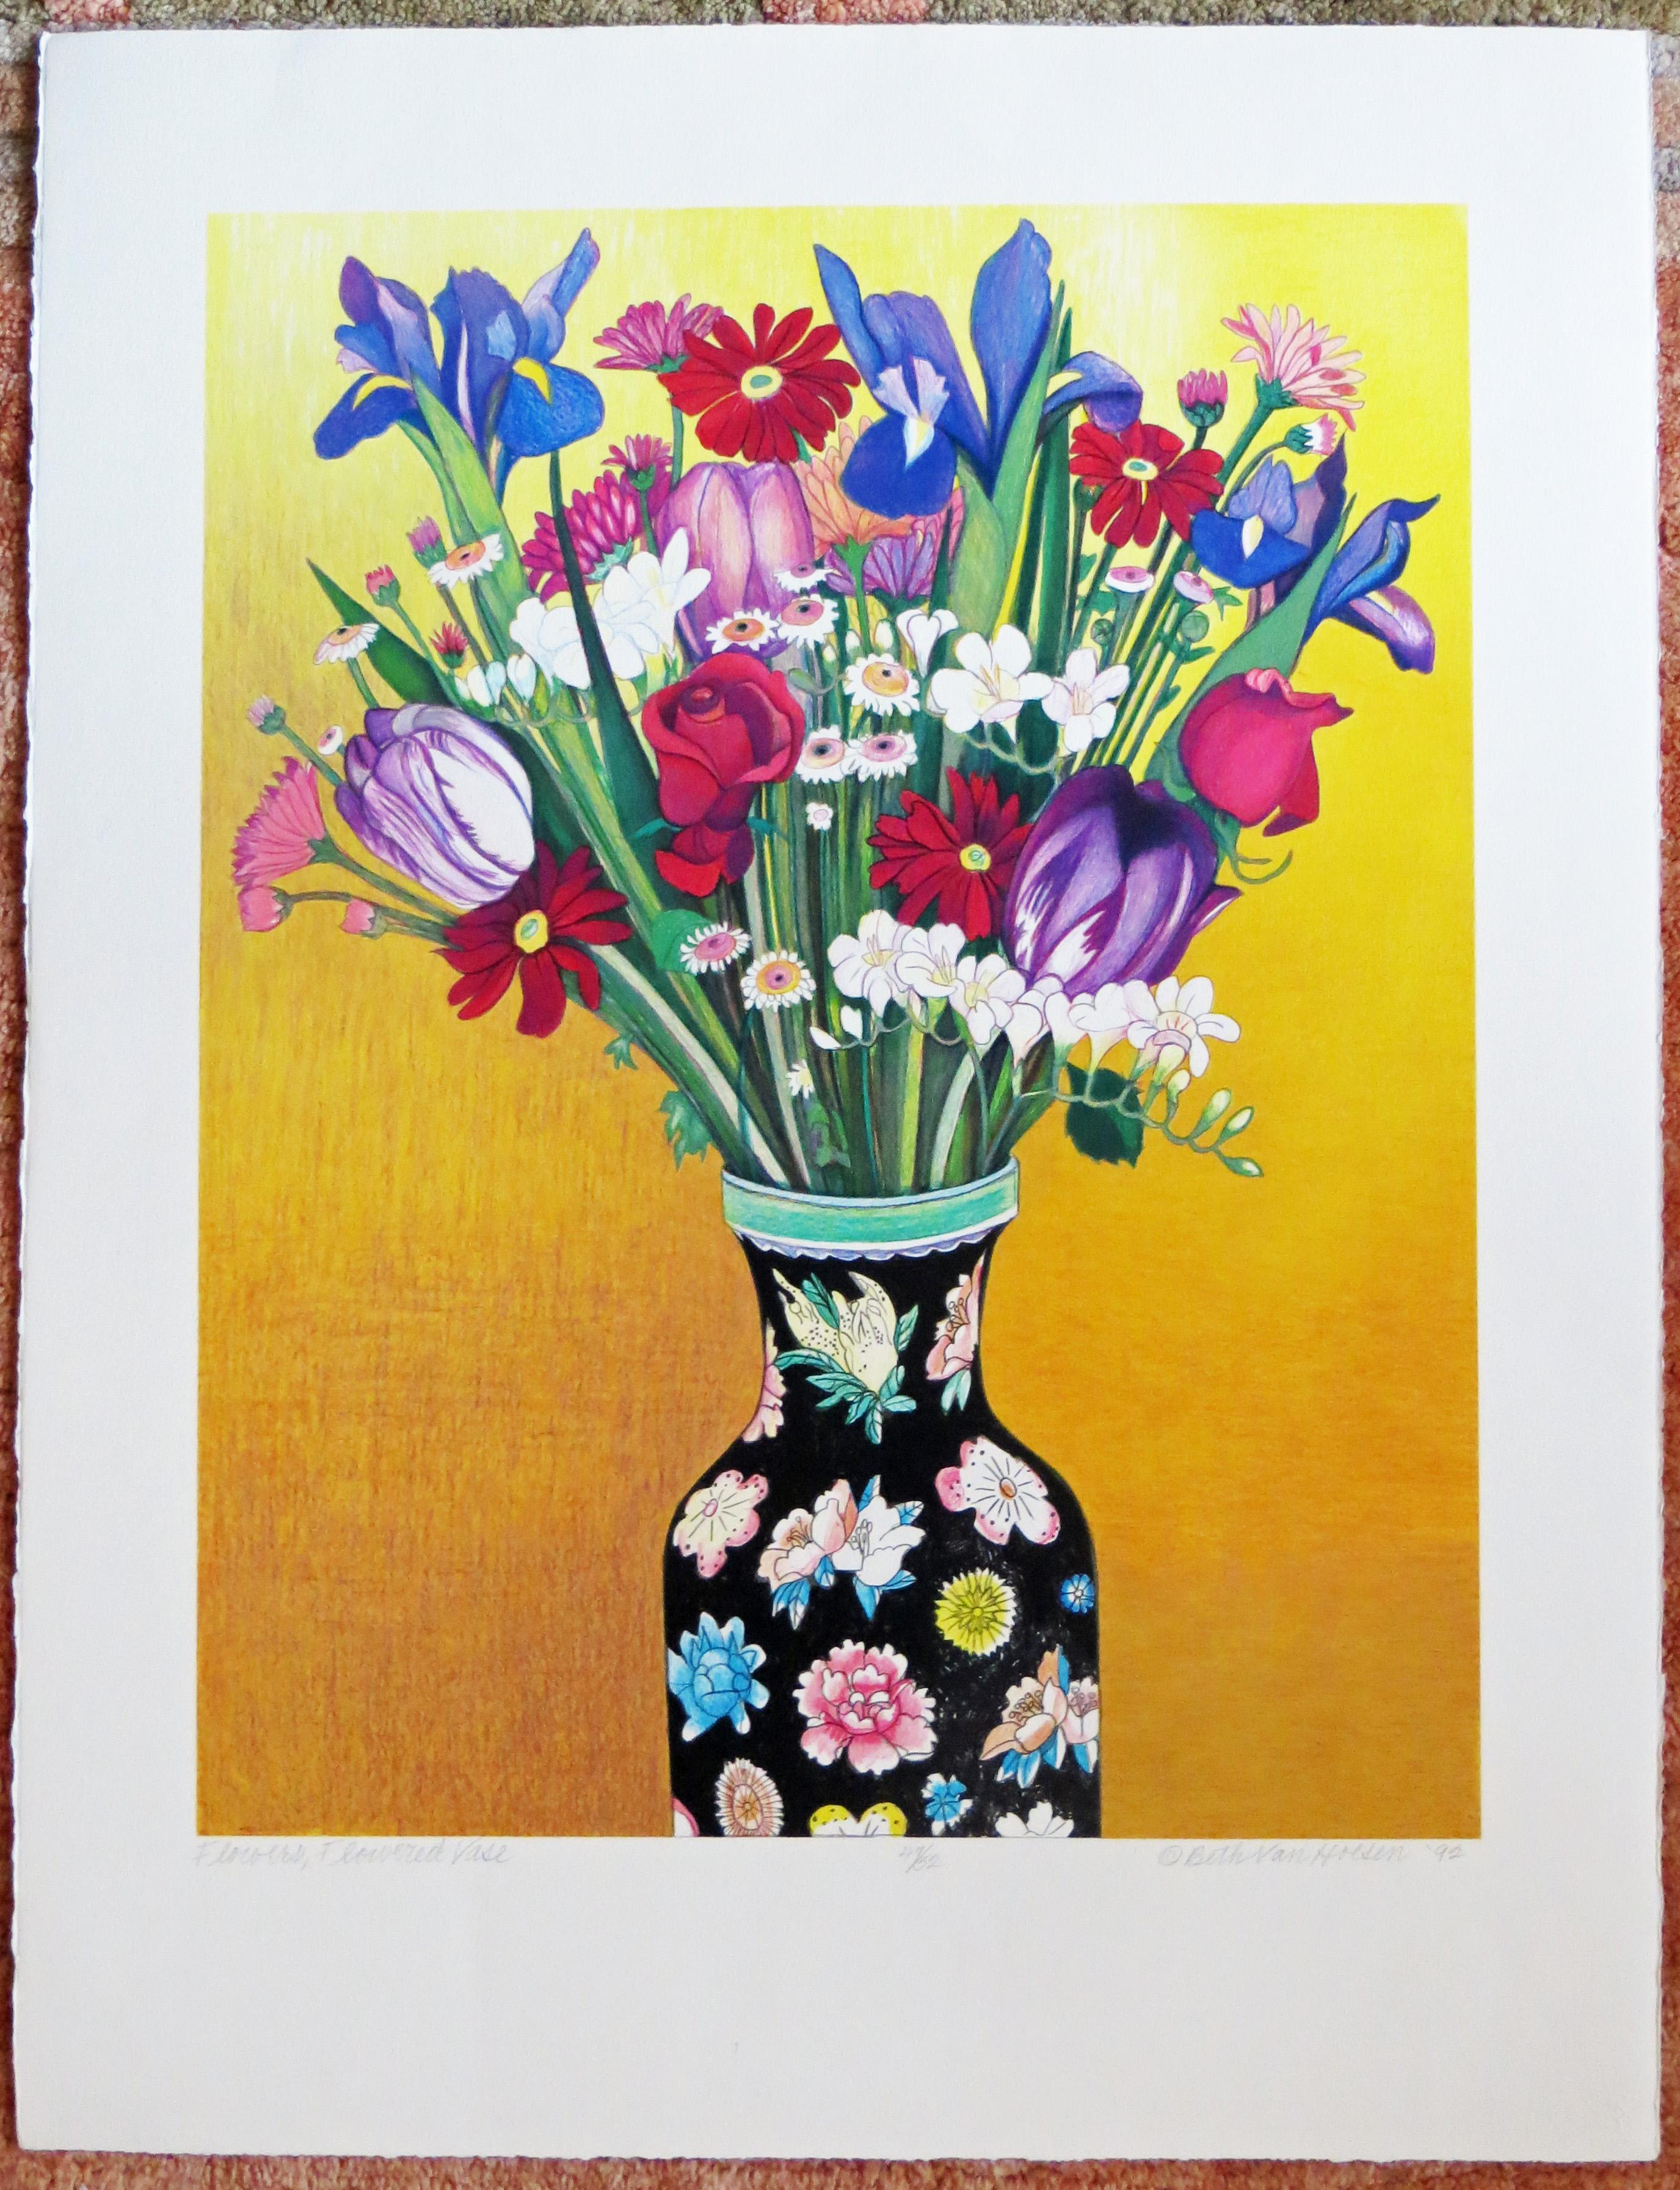 Flowers, Flowered Vase - Print by Beth van Hoesen